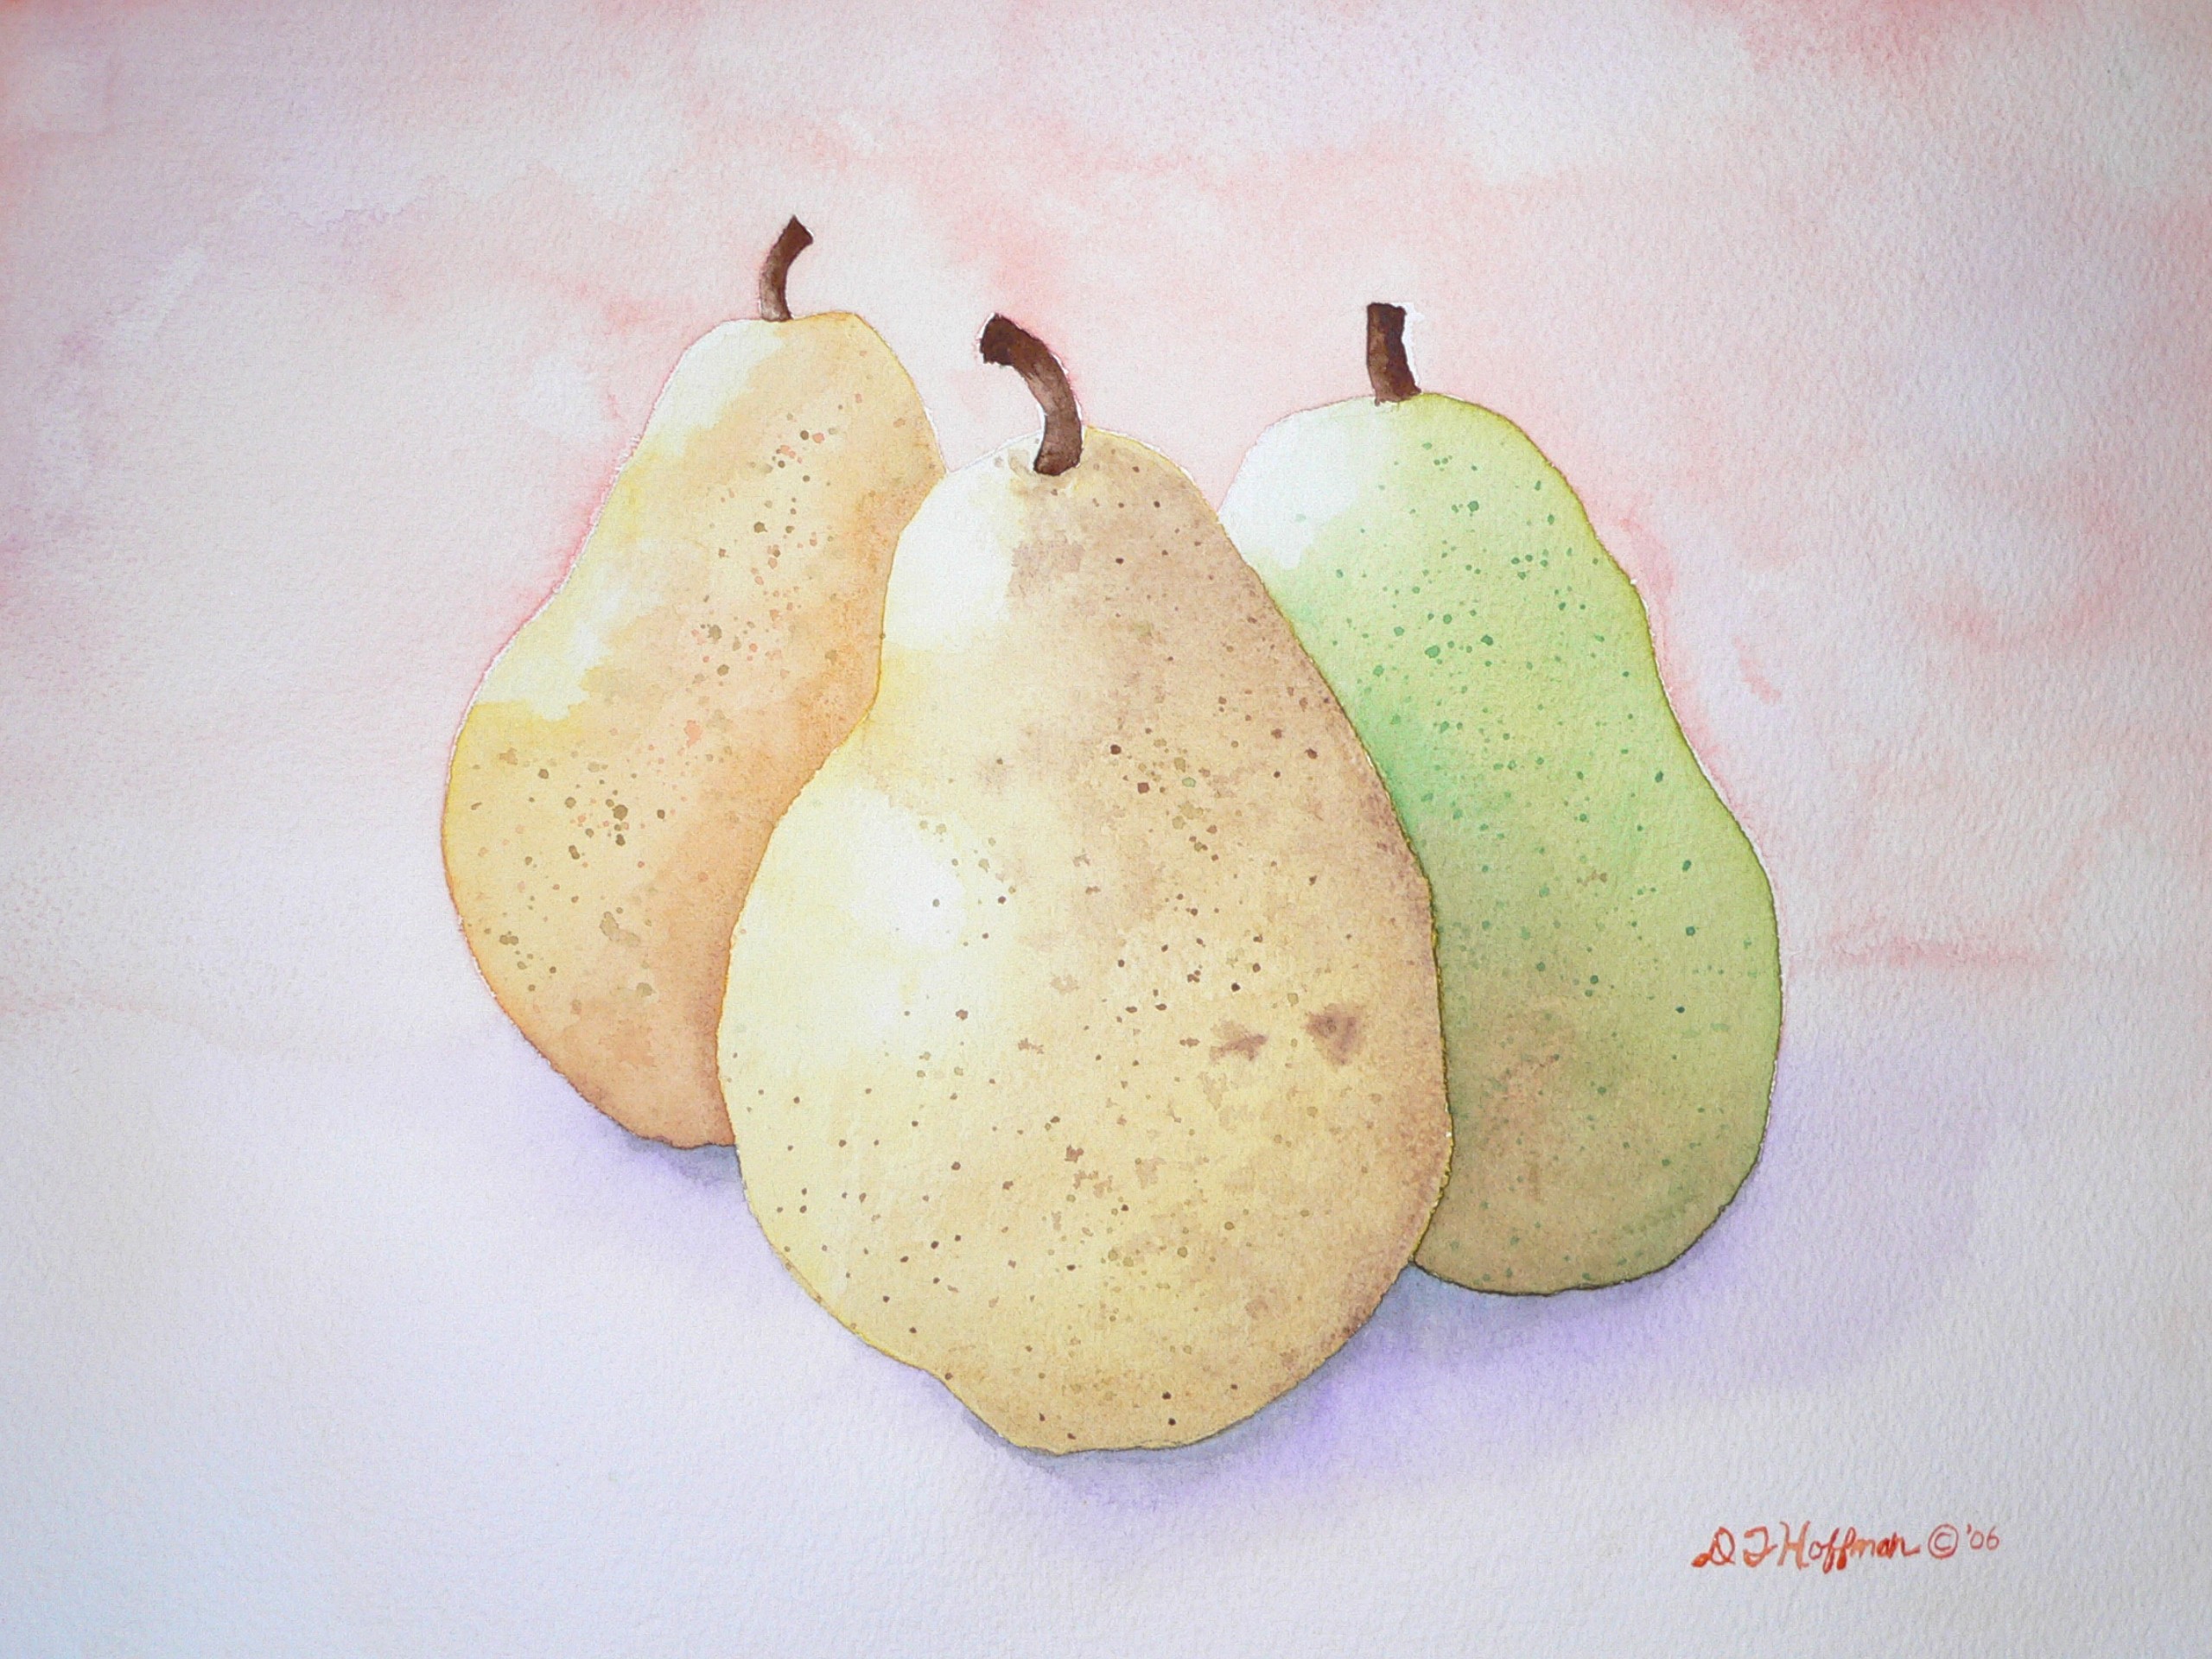 paintings, pears, still life - desktop wallpaper